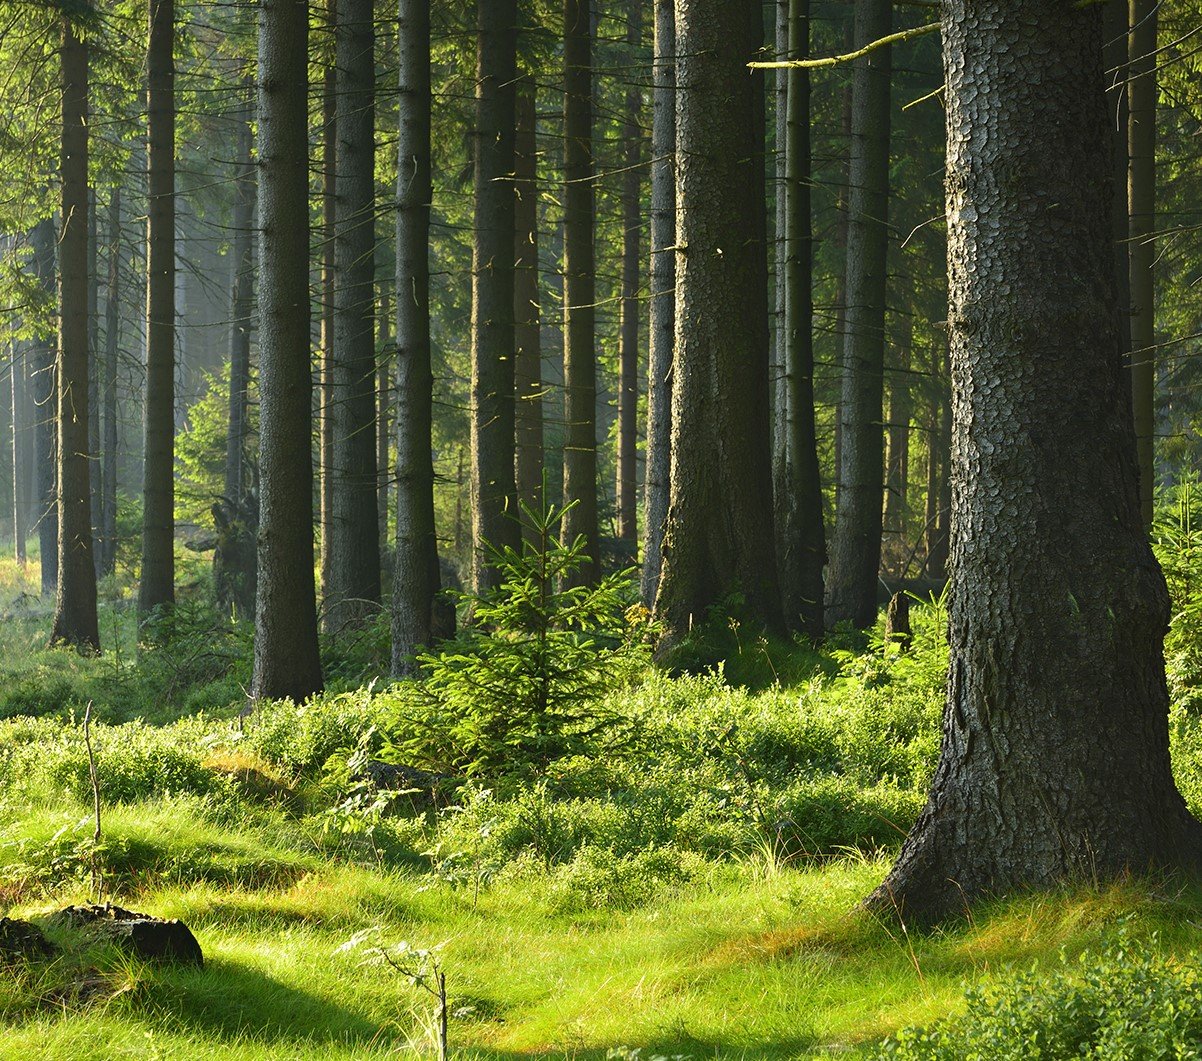 Vehreää metsämaisemaa, jossa näkyy puiden runkoja ja keskellä pieni kuusen taimi.